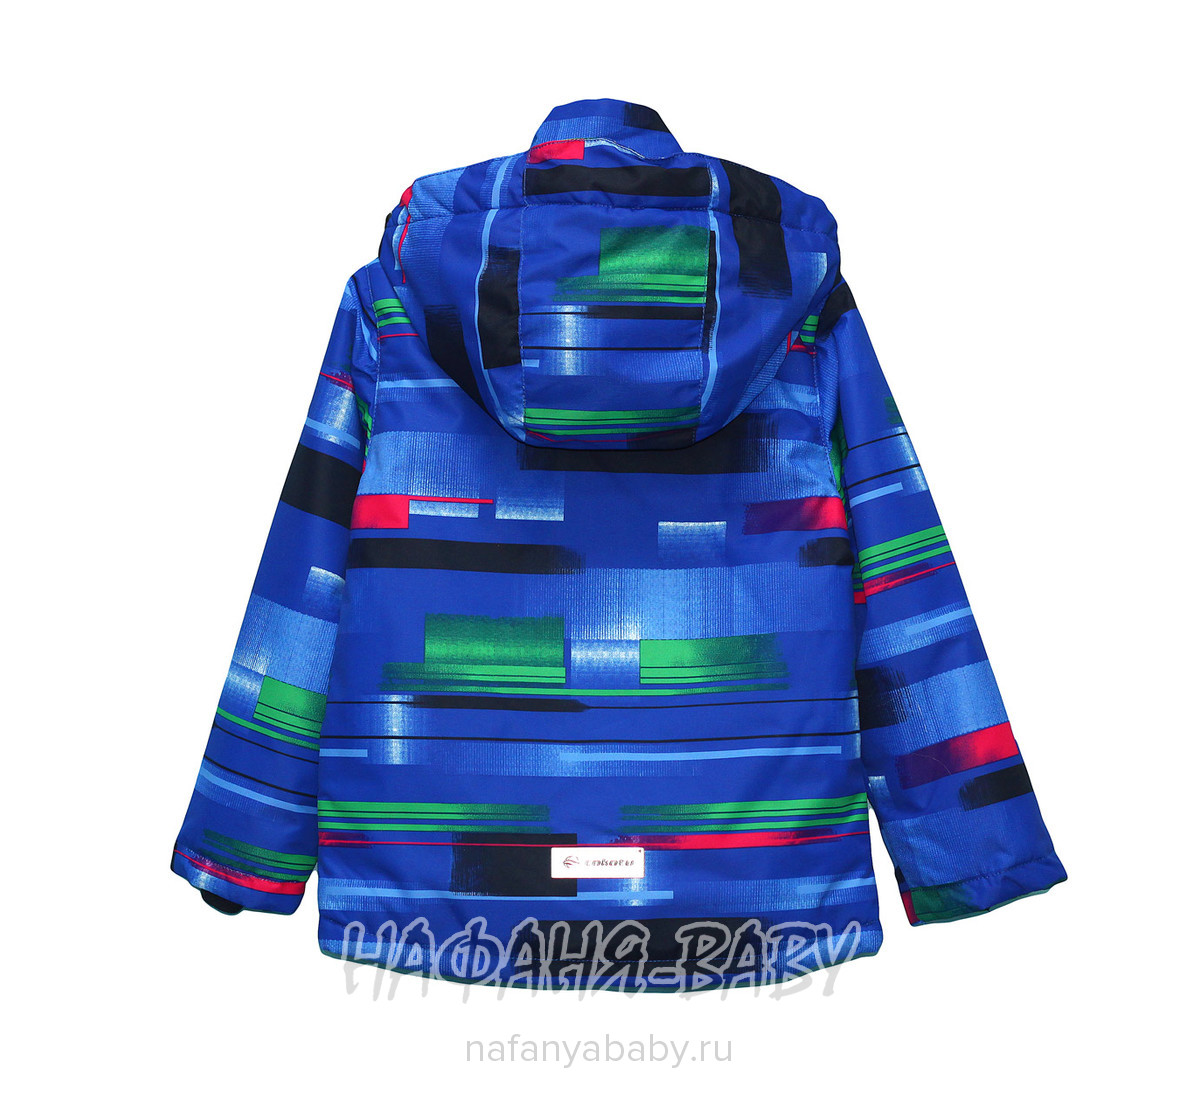 Детский демисезонный костюм COKOTU арт: 719, 1-4 года, 5-9 лет, цвет синий, оптом Китай (Пекин)